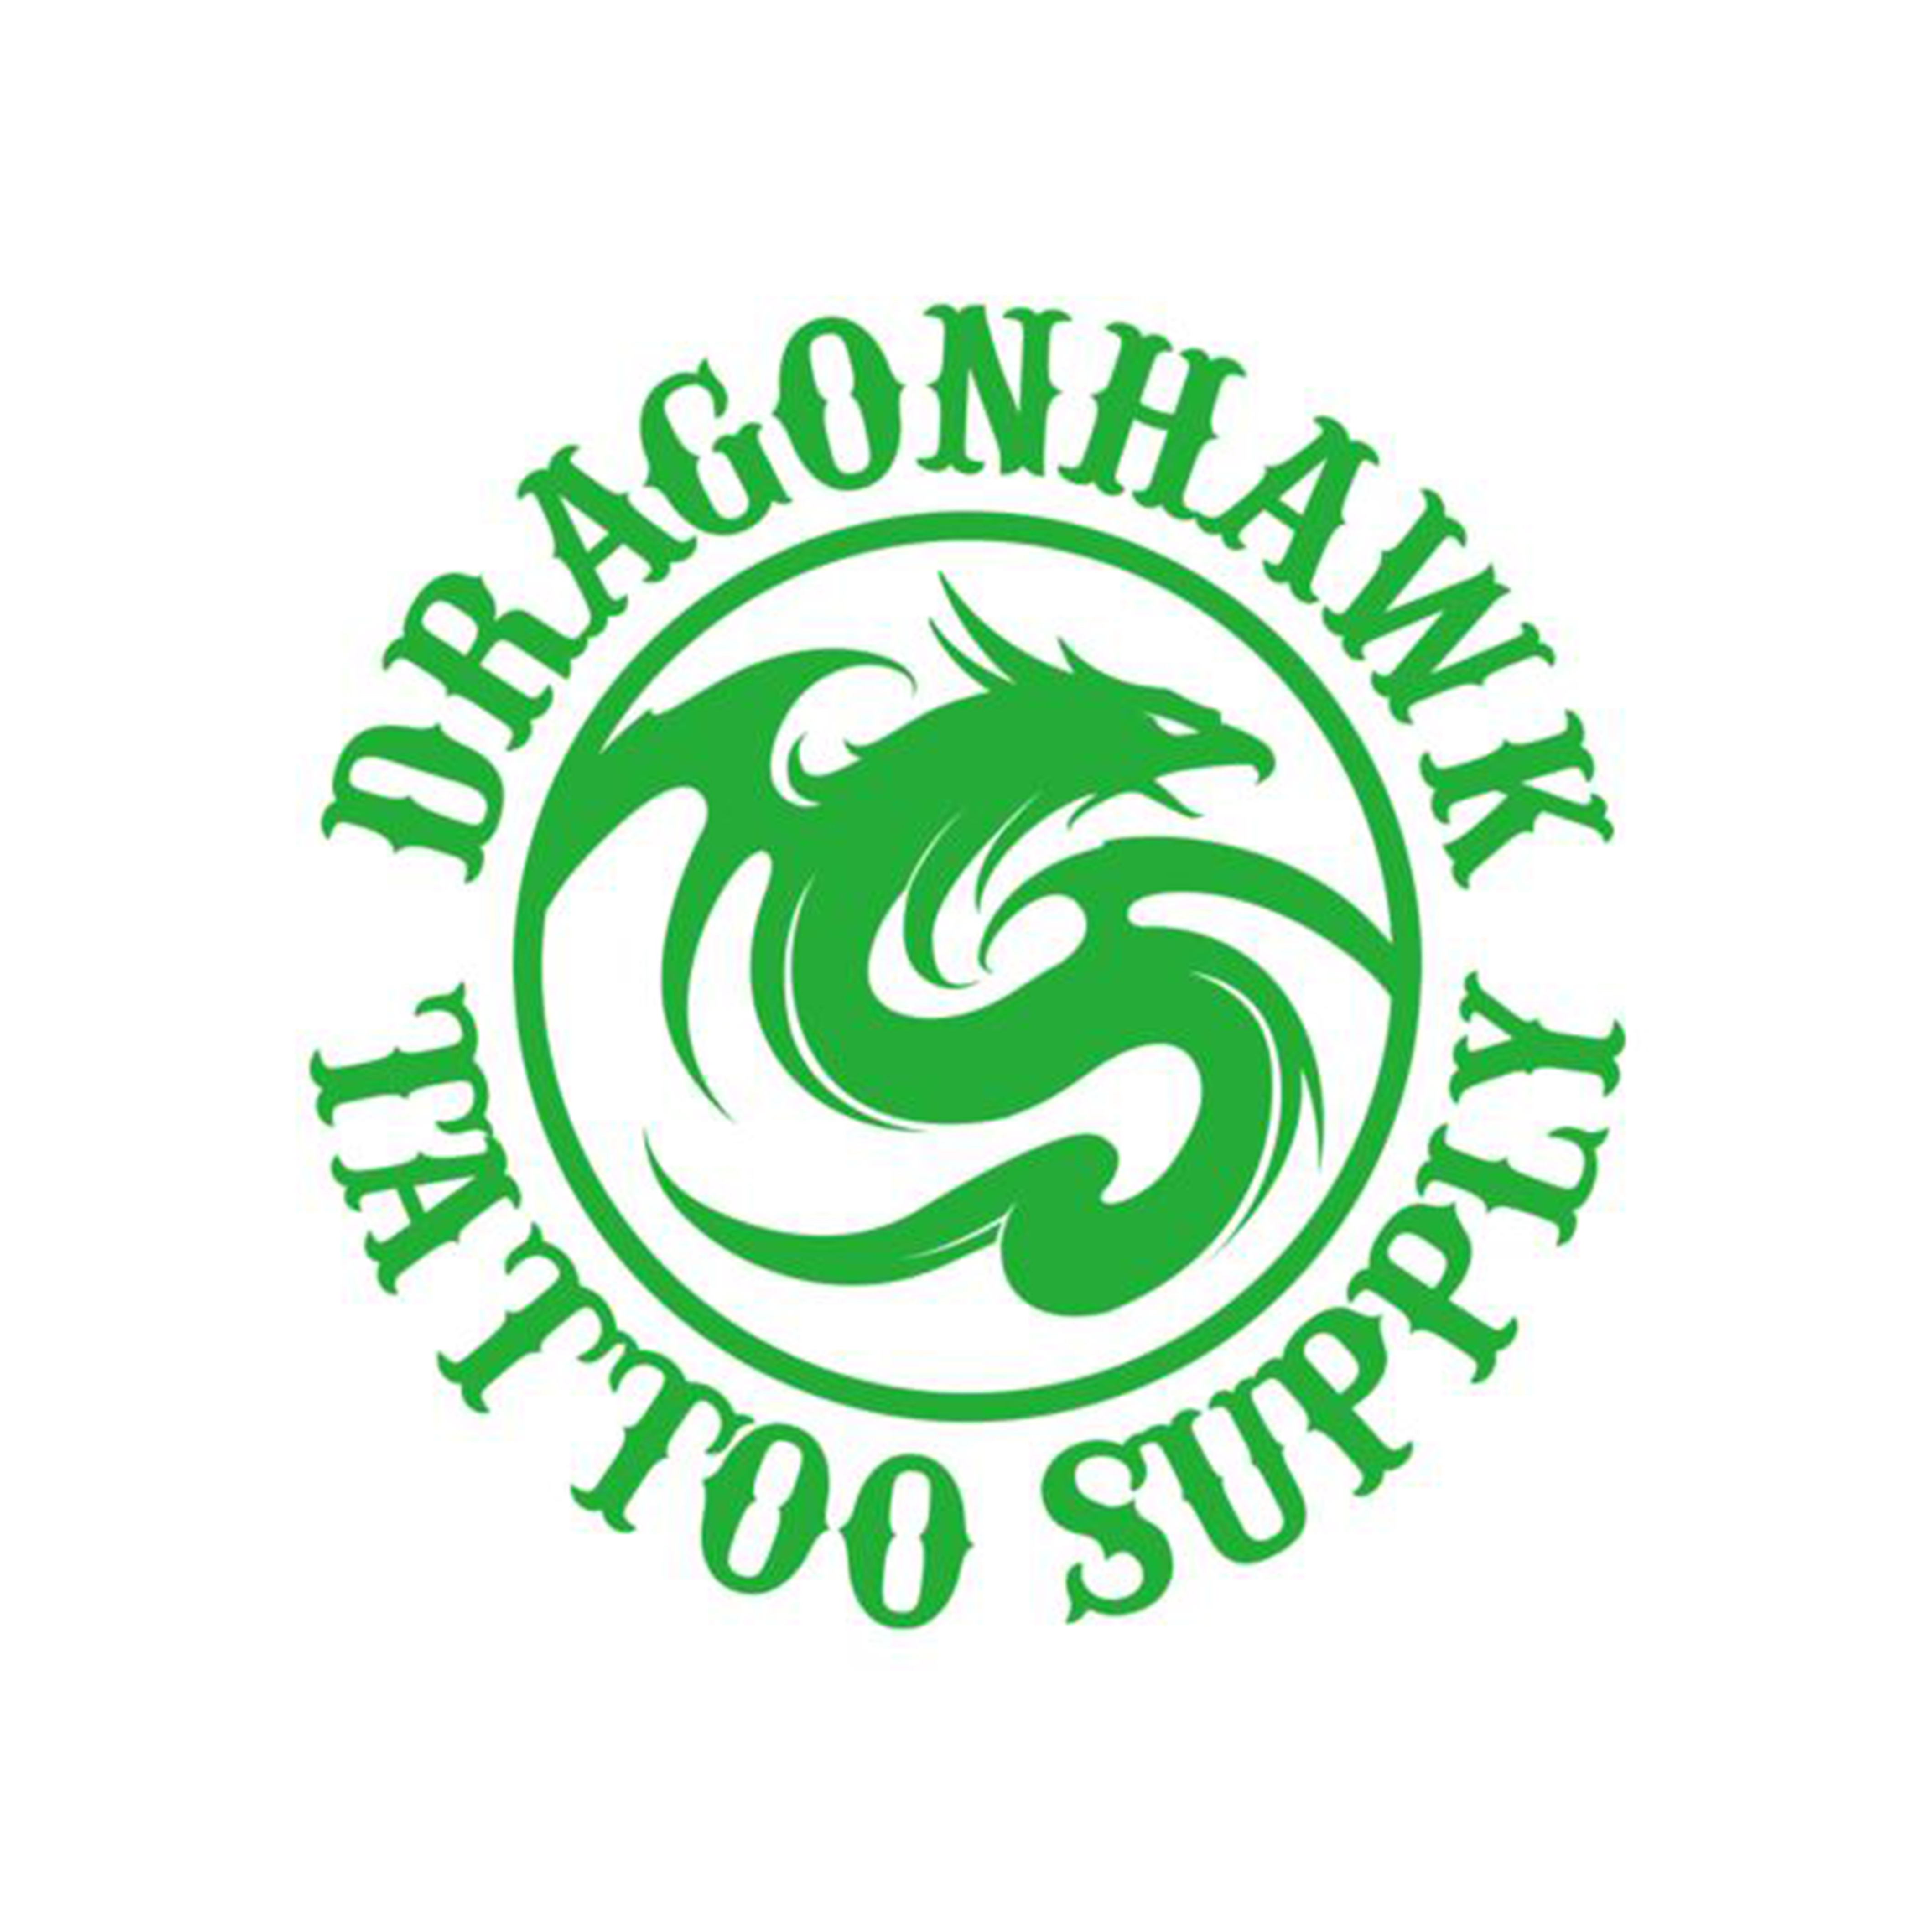 Dragonhawk Tattoos logo